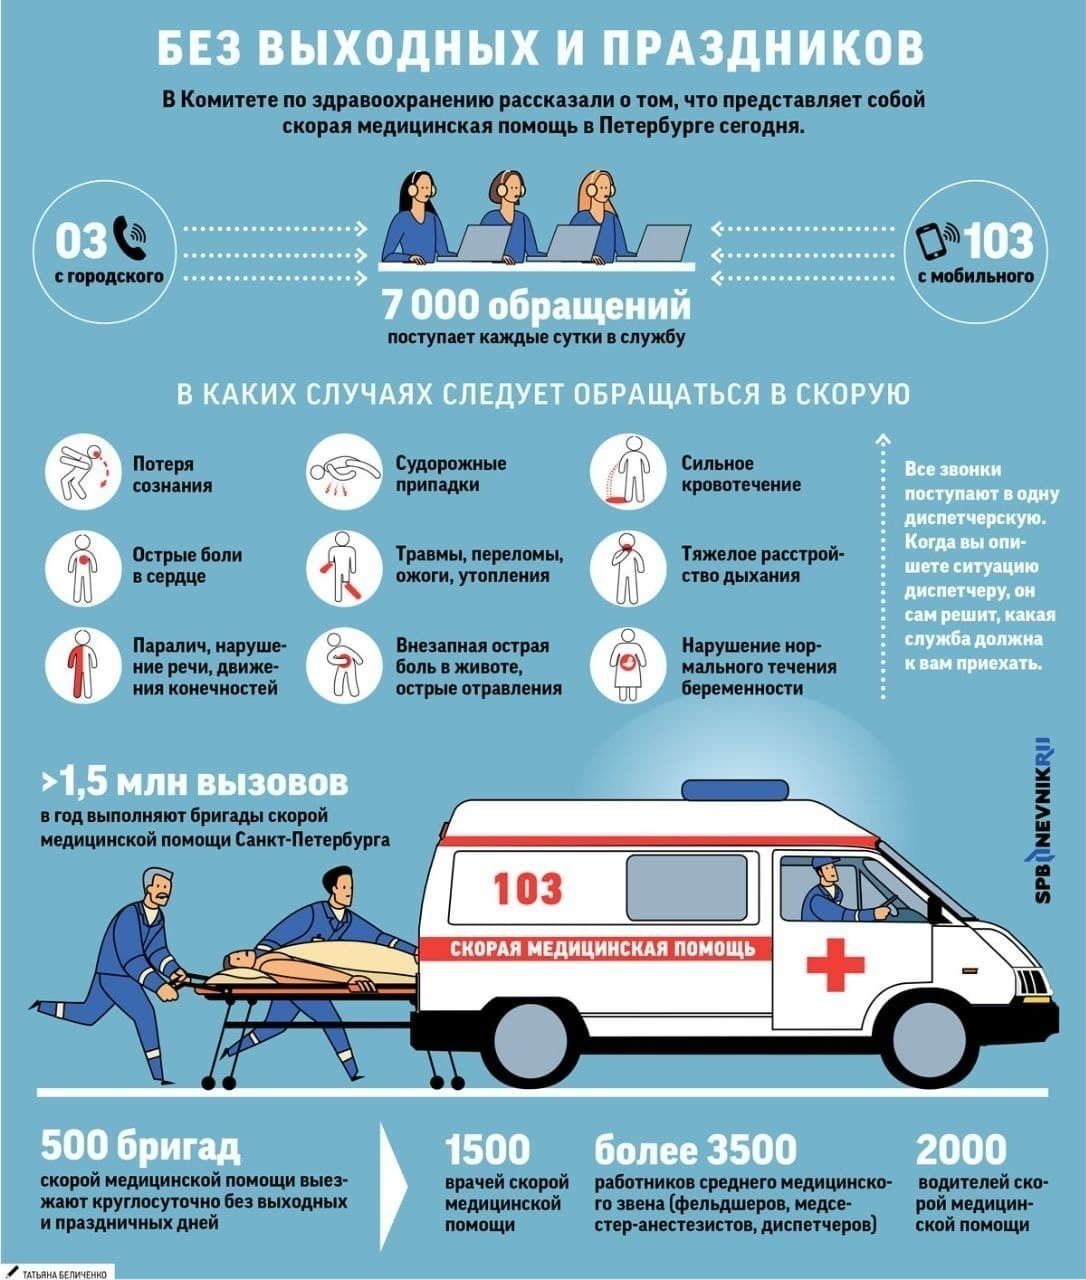 Показатели работы скорой медицинской помощи